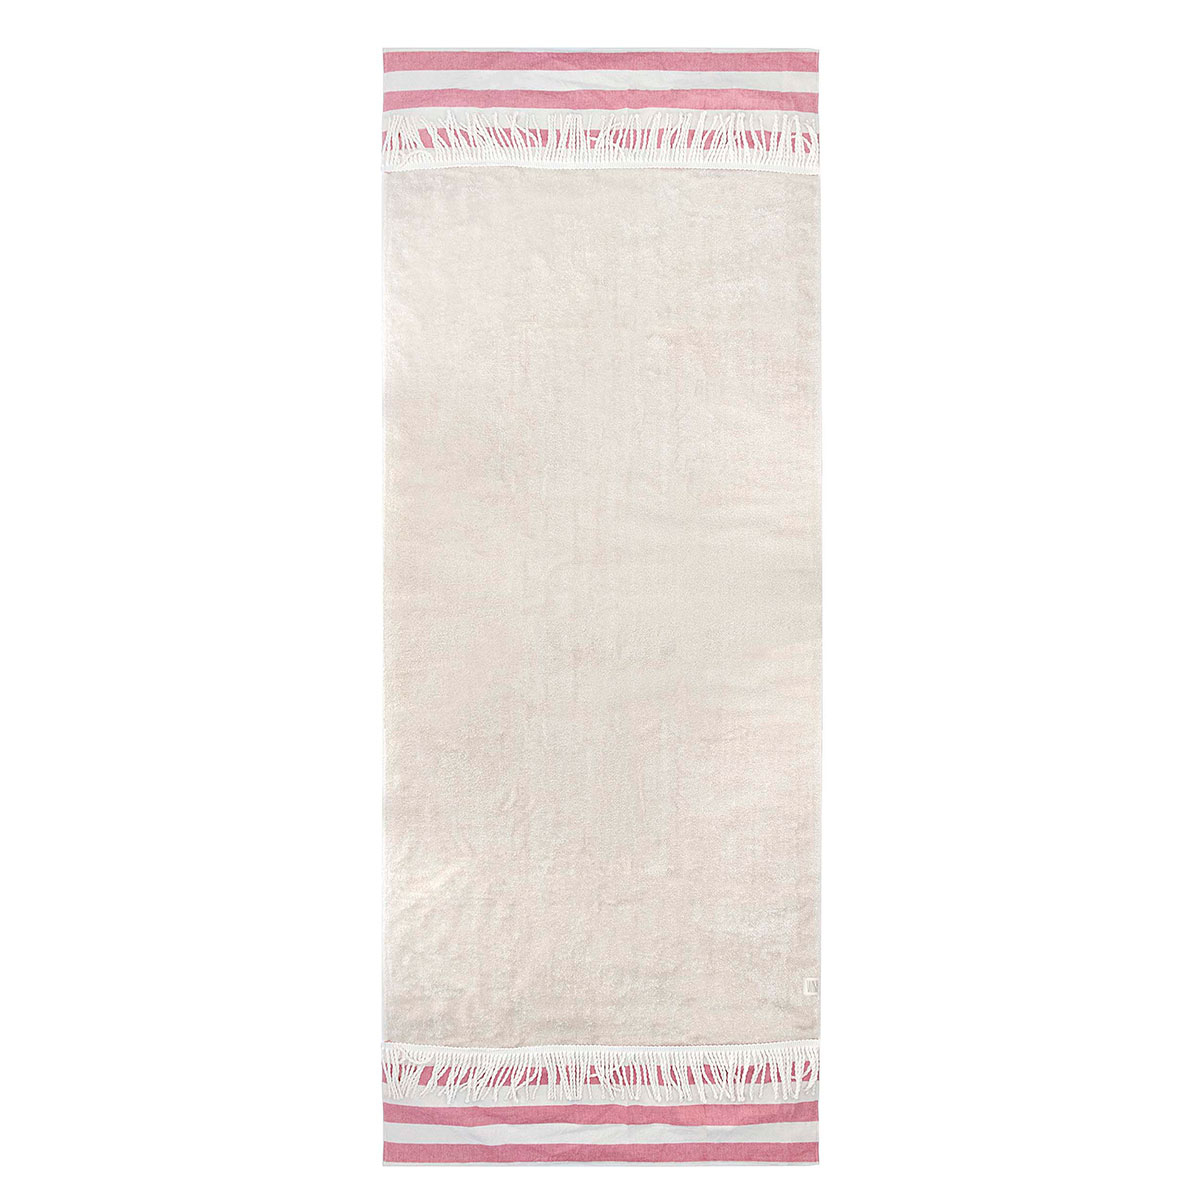 Πετσέτα Θαλάσσης (80x160) White Fabric Navy Stripes Beige